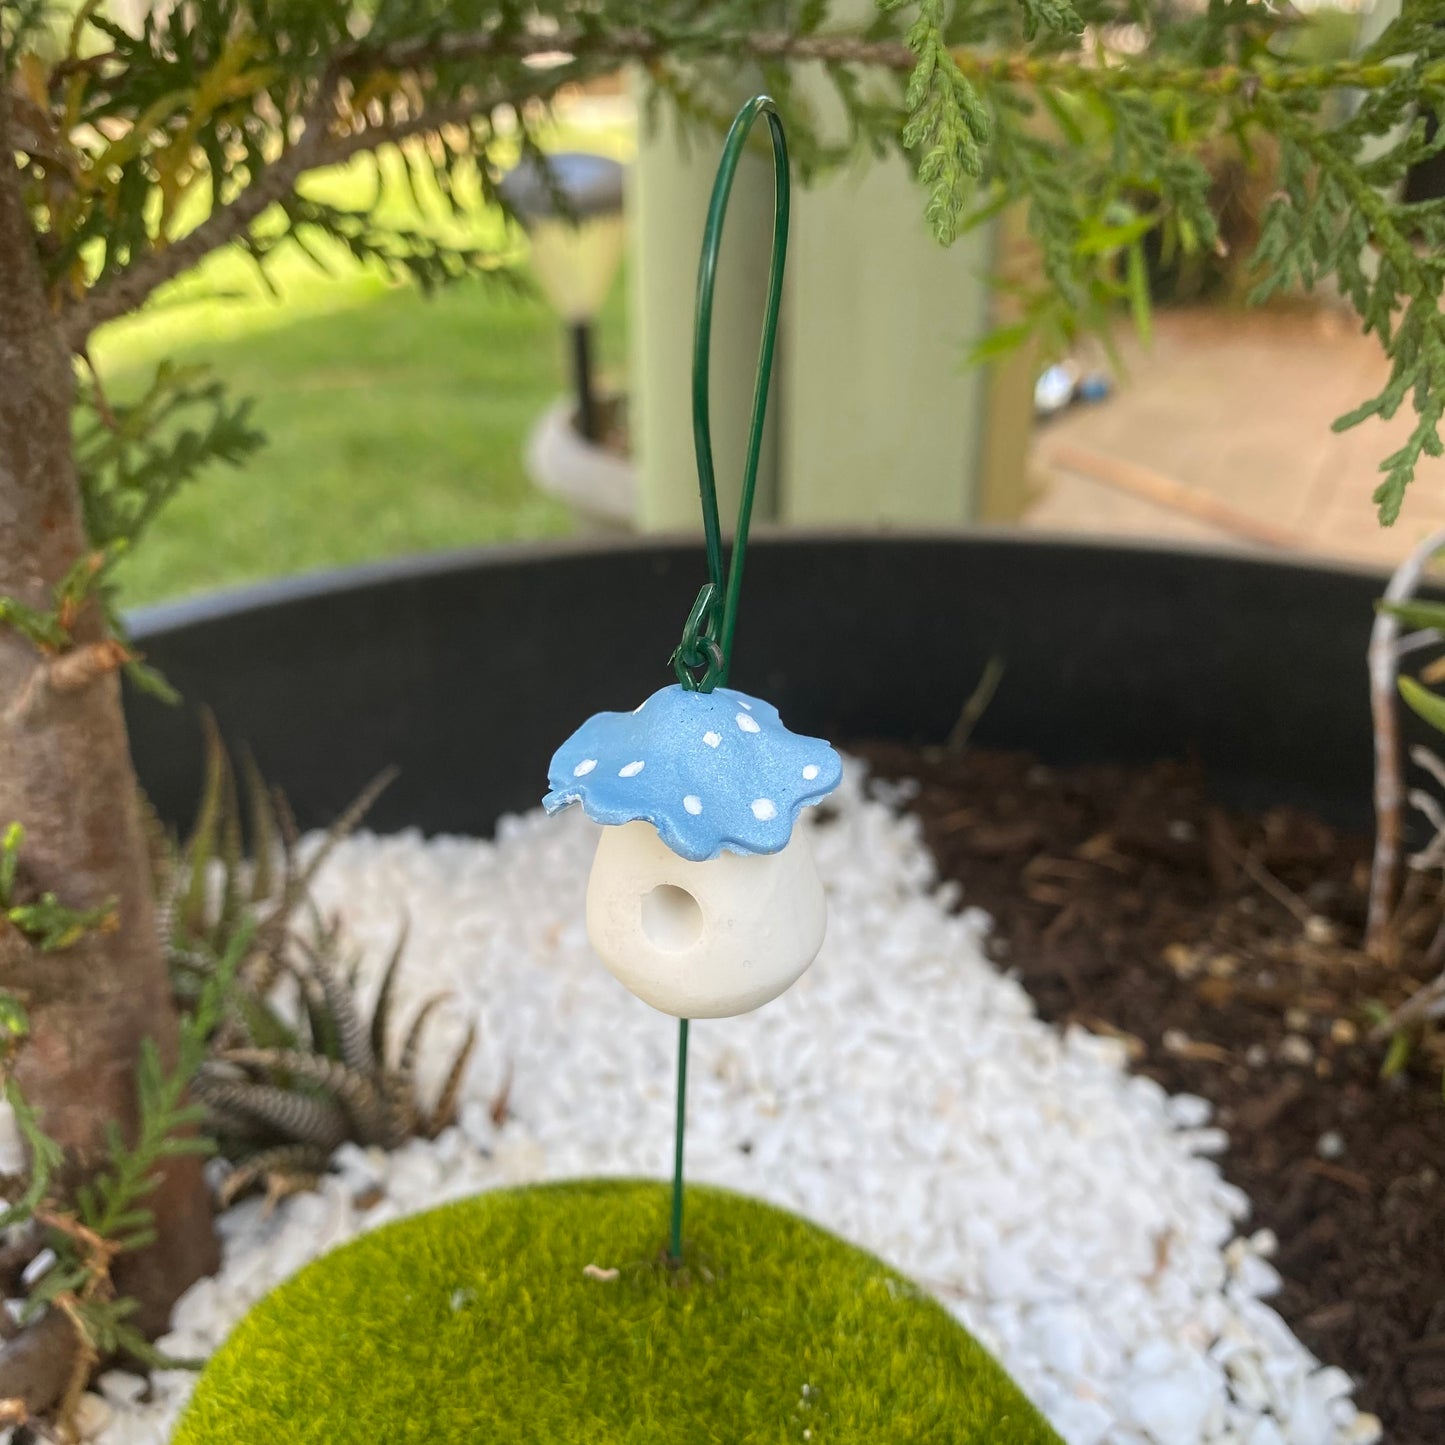 Fairy Garden Frilly Mushroom Lanterns